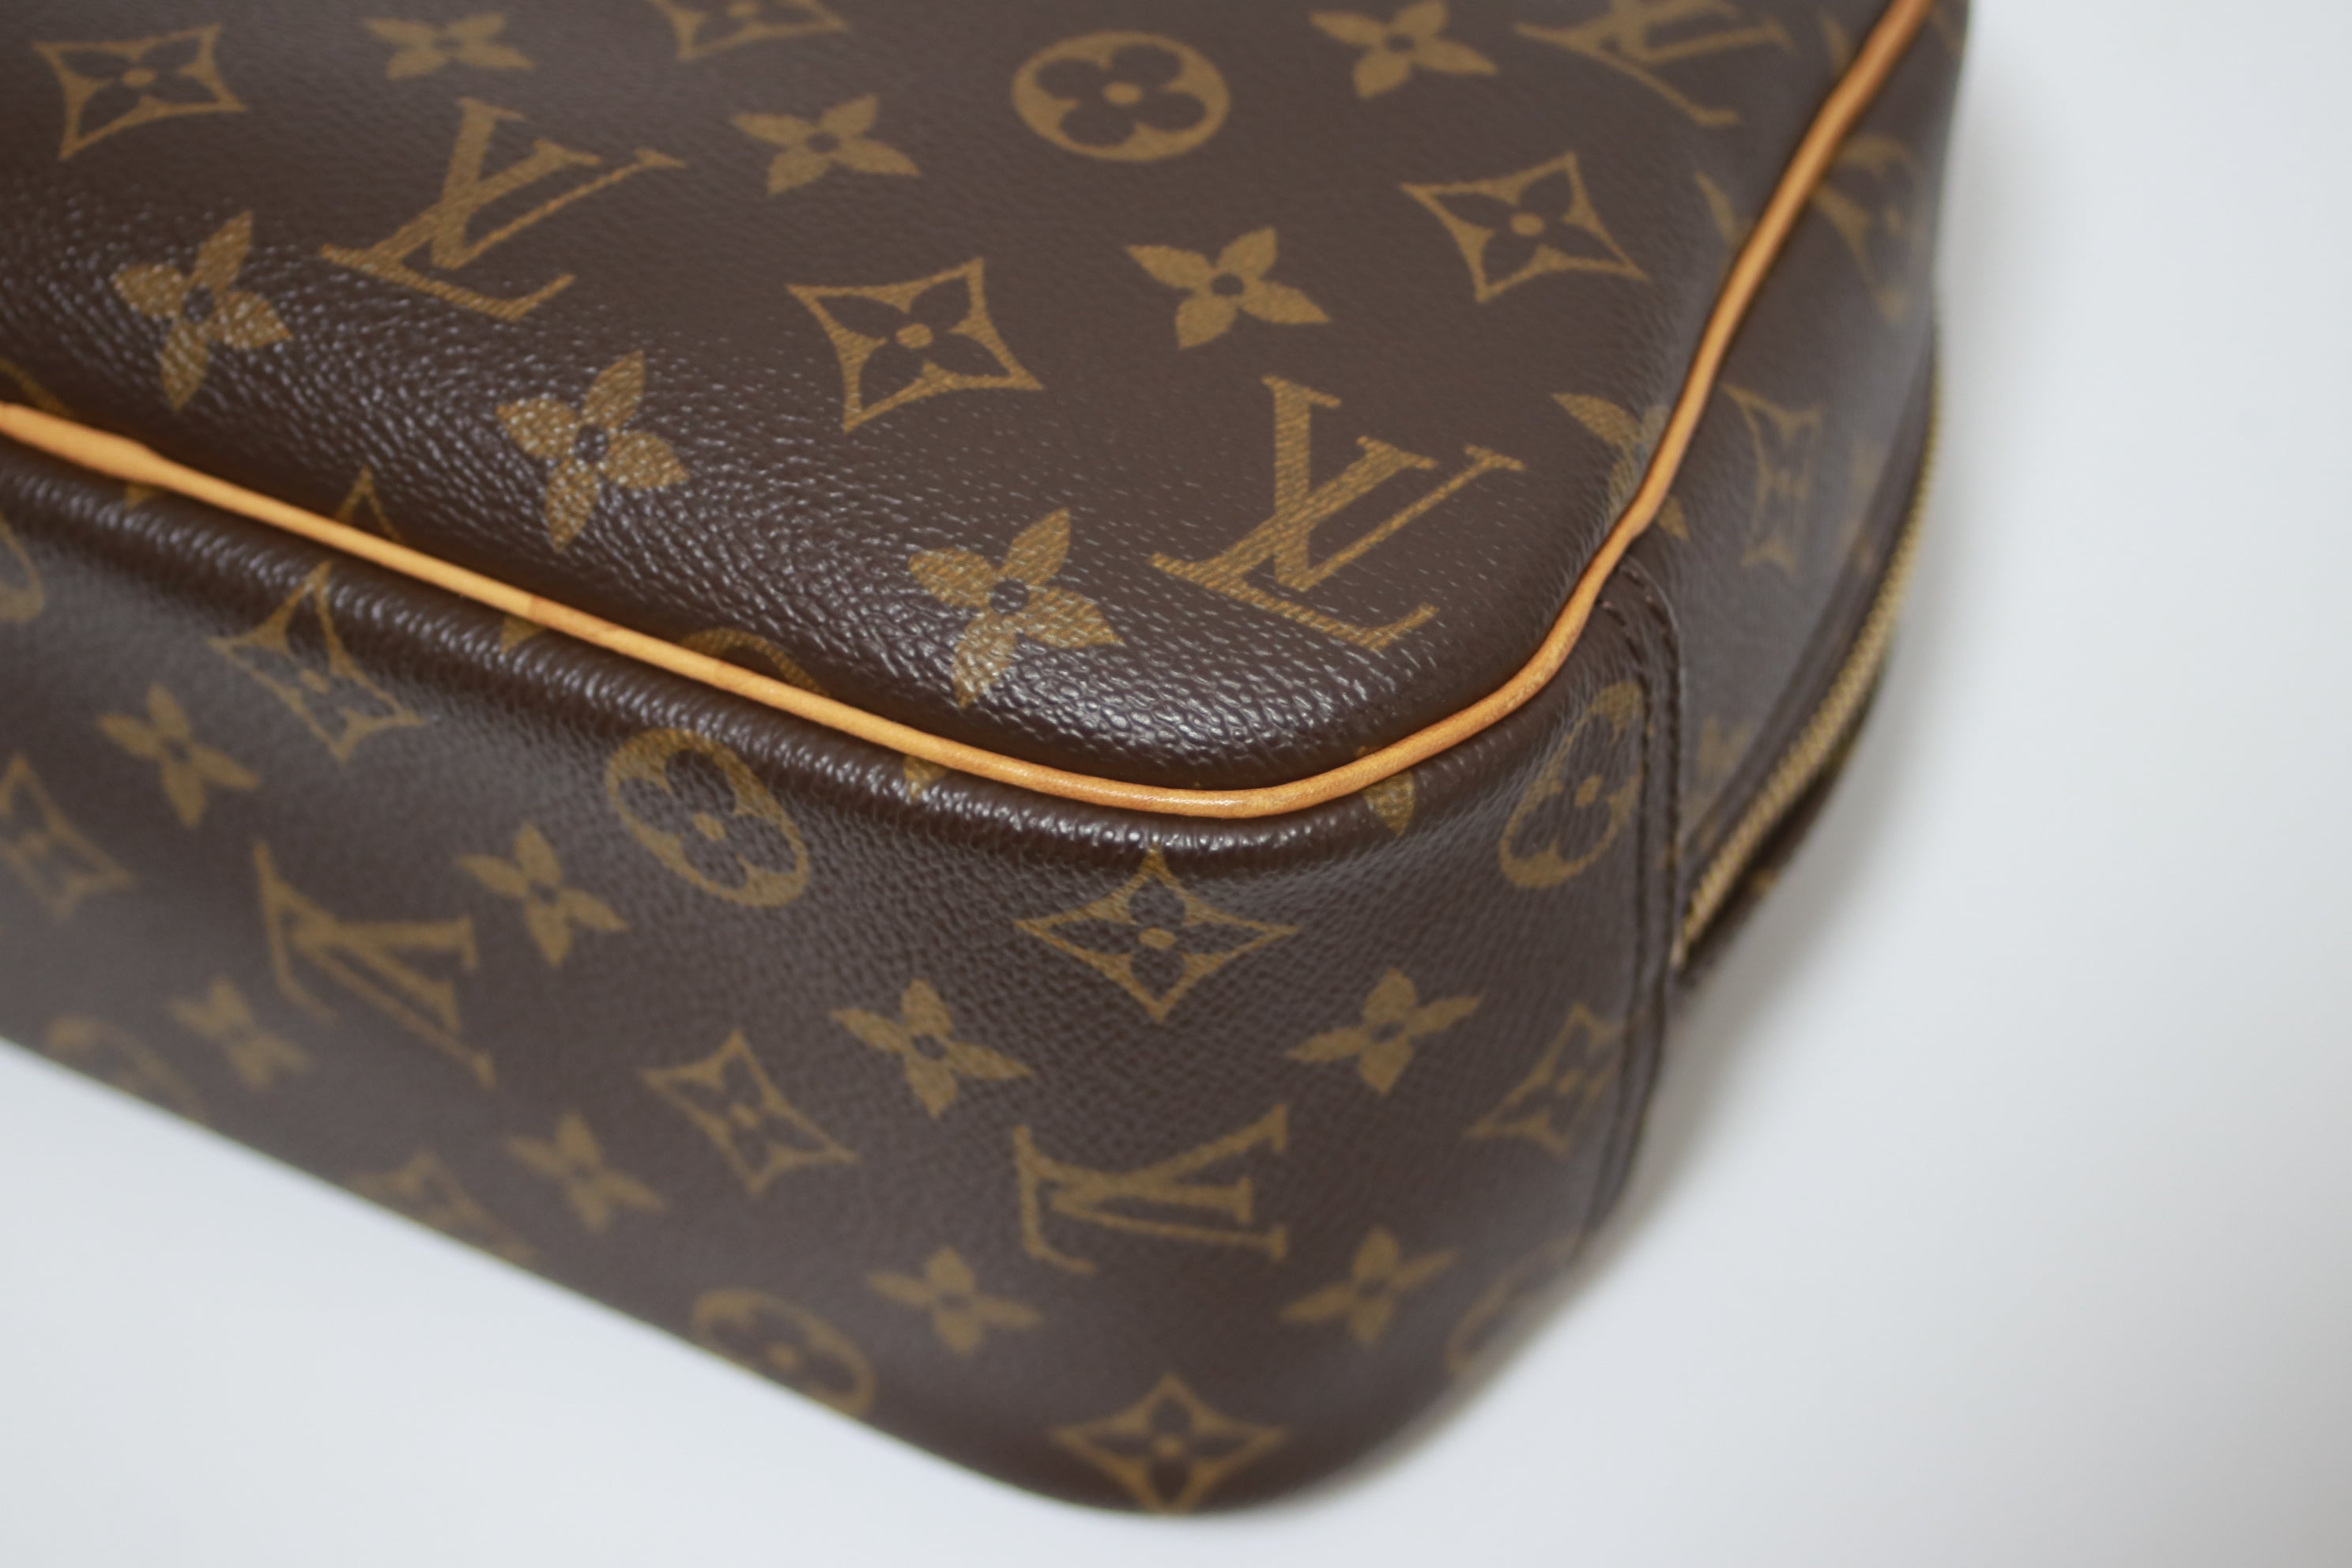 Louis Vuitton Trouville Handbag Used (8065)